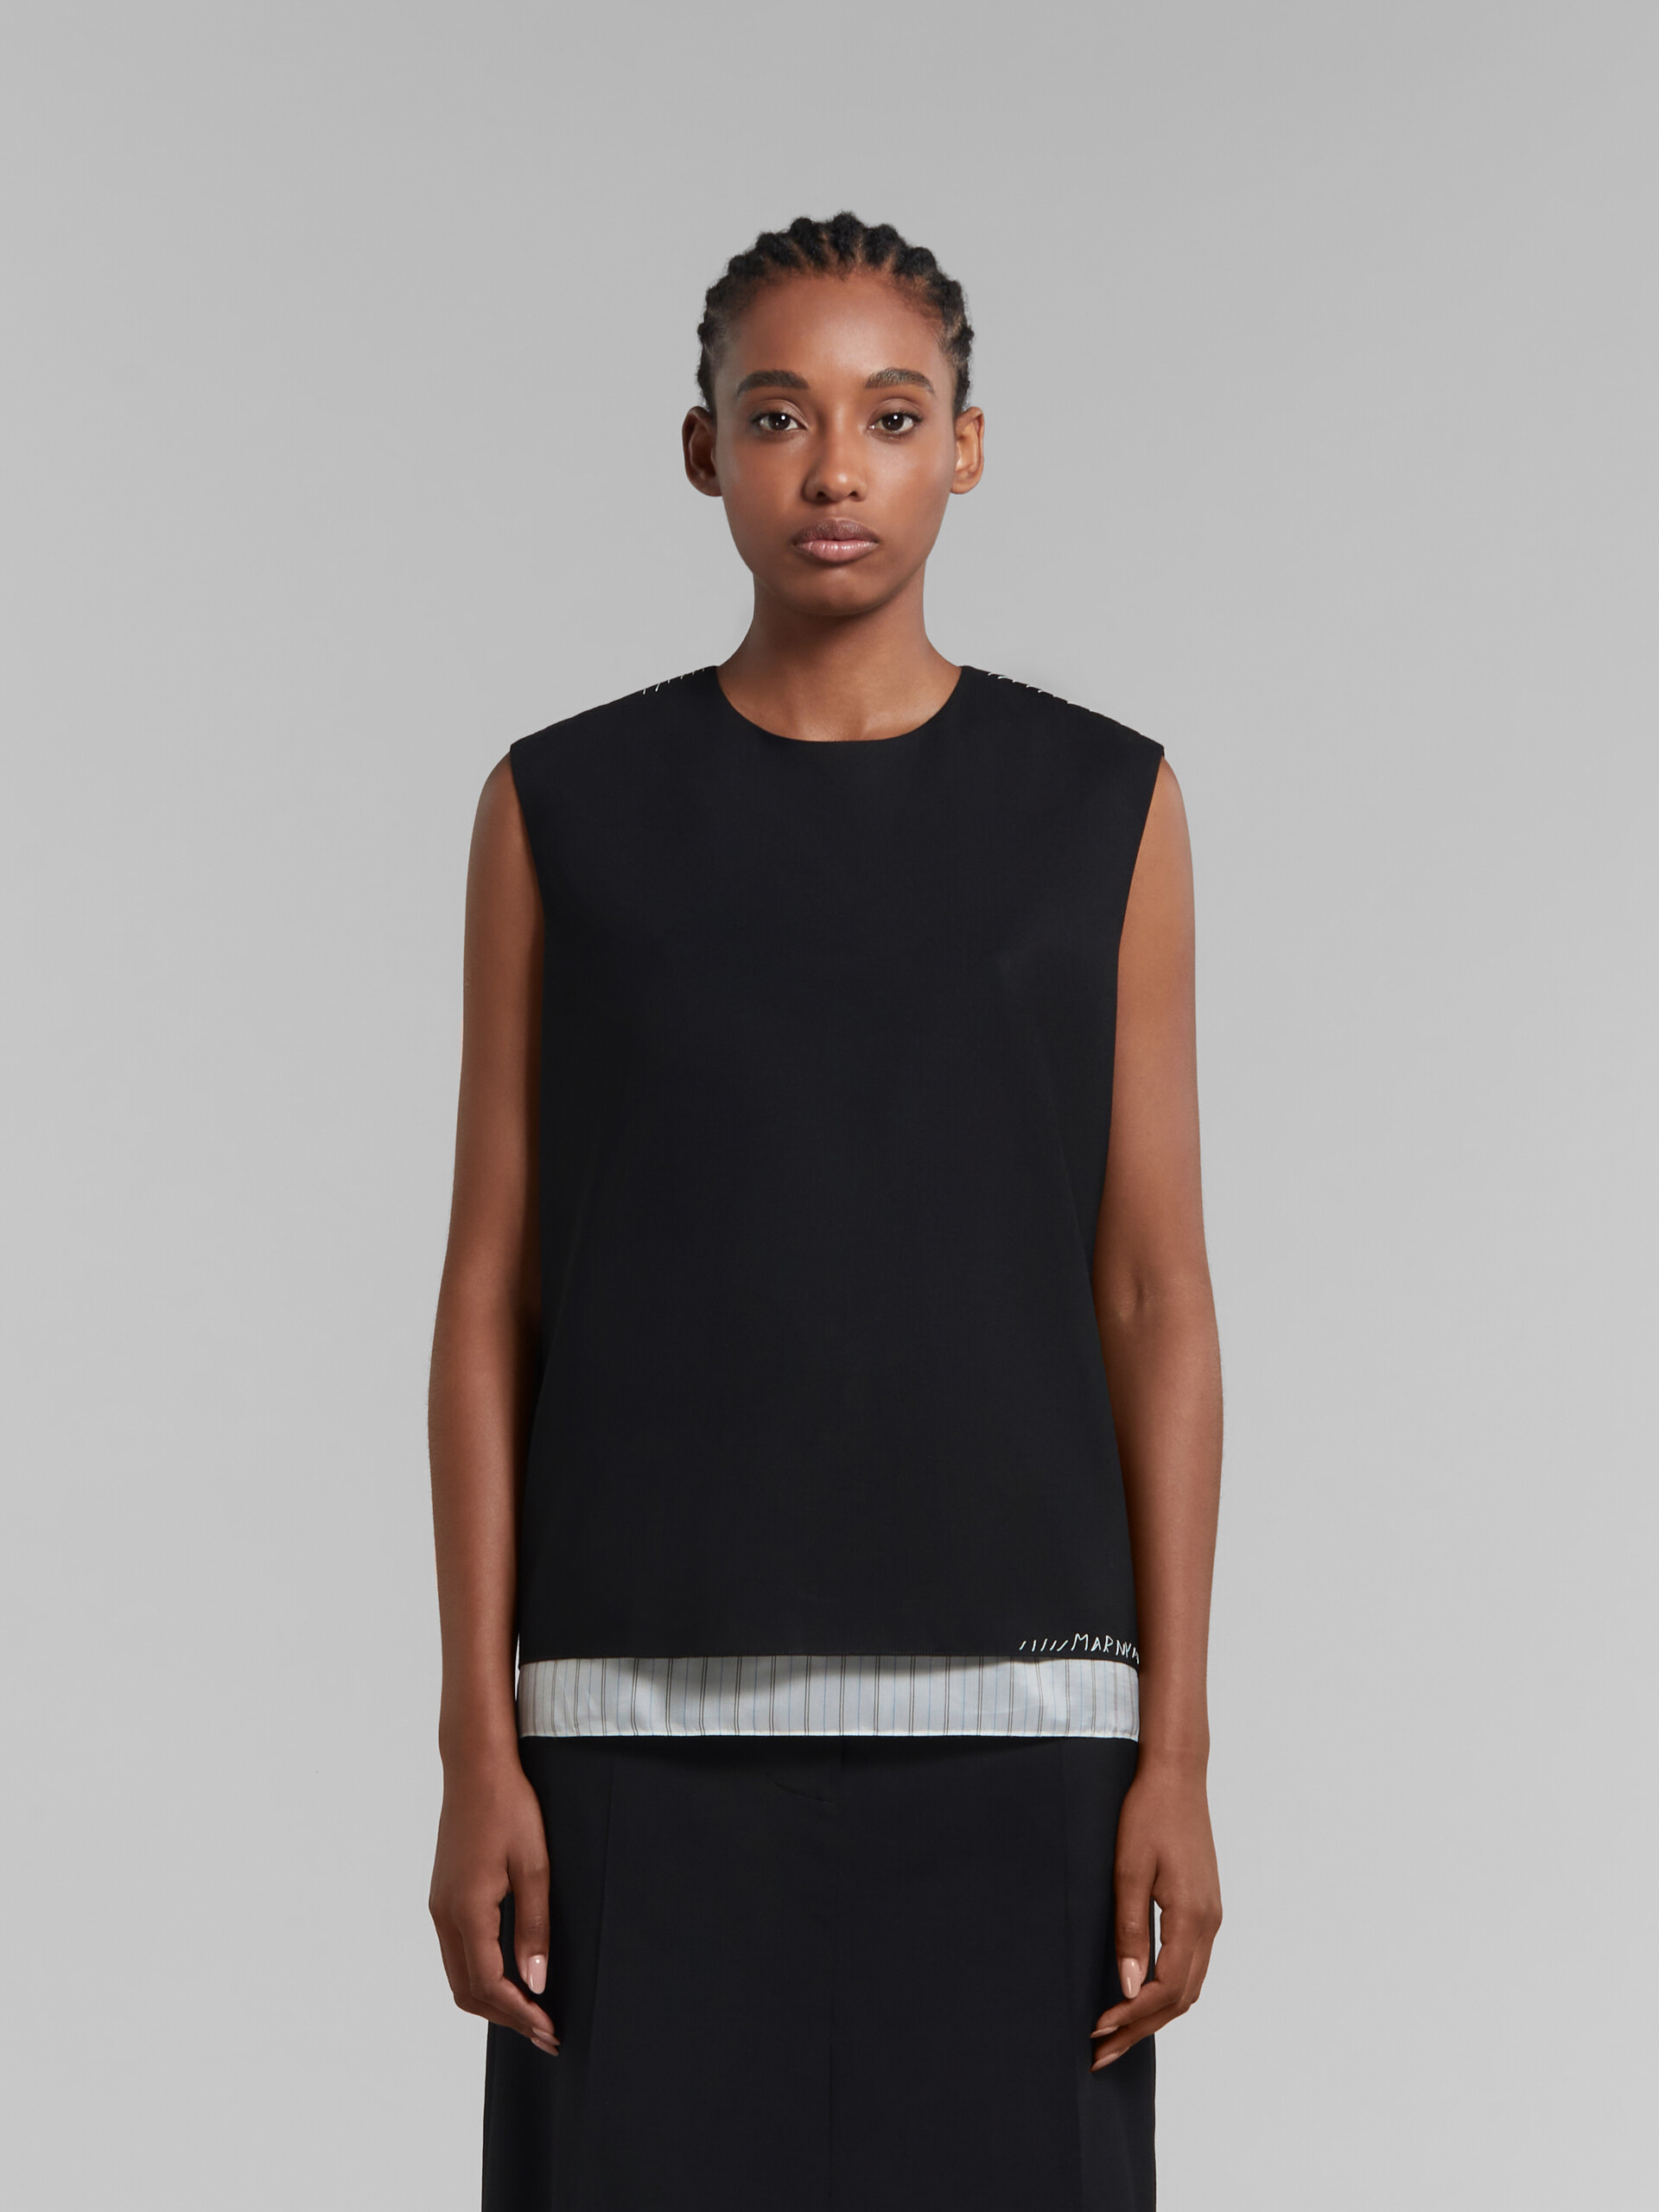 Haut sans manches en laine tropicale noire avec effet raccommodé Marni - Chemises - Image 2